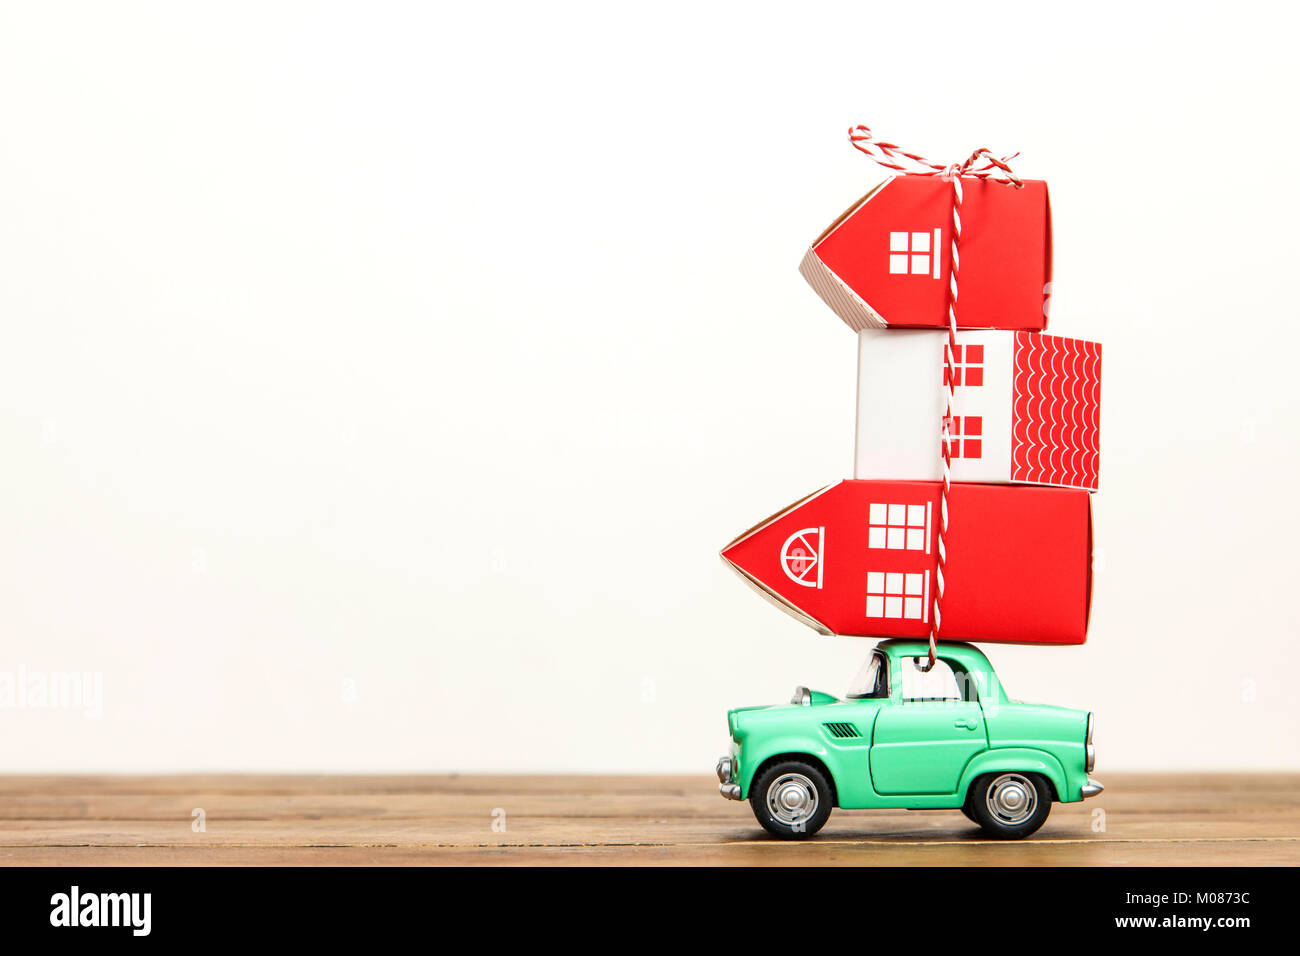 Spielzeugauto mit einem Stapel von Häusern. Umzug Konzept Stockfoto